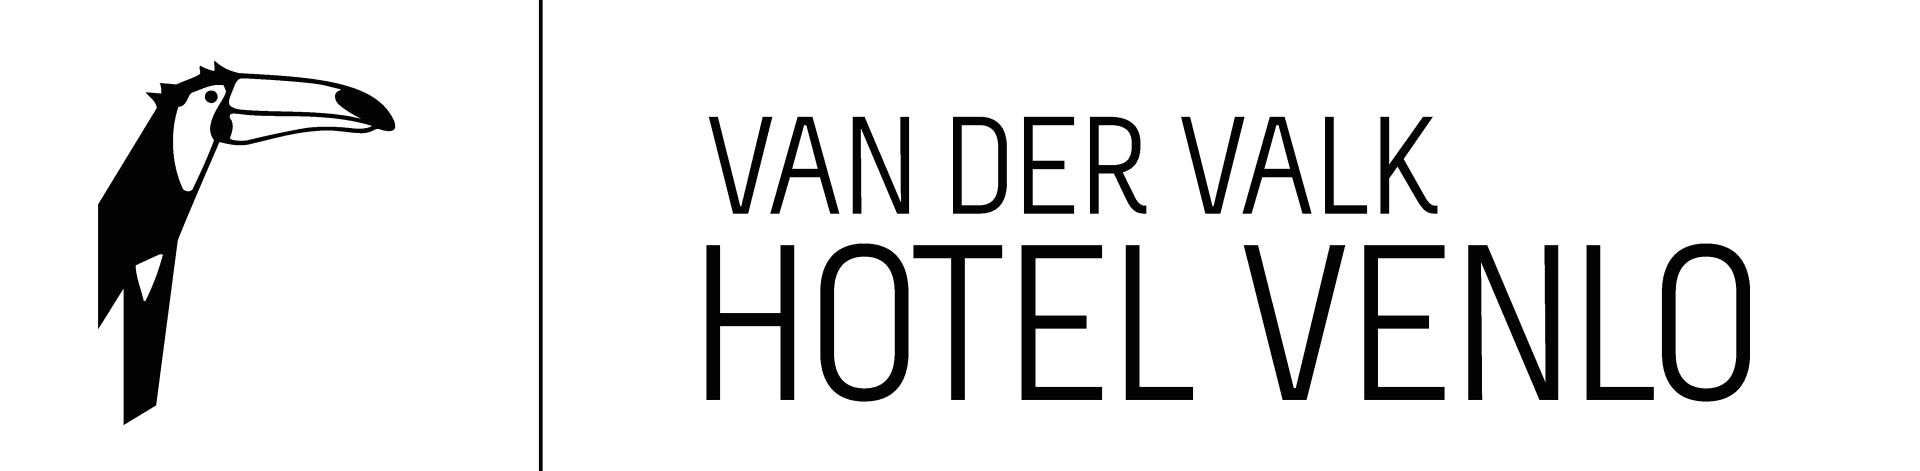 Van der Valk Hotel Venlo logo